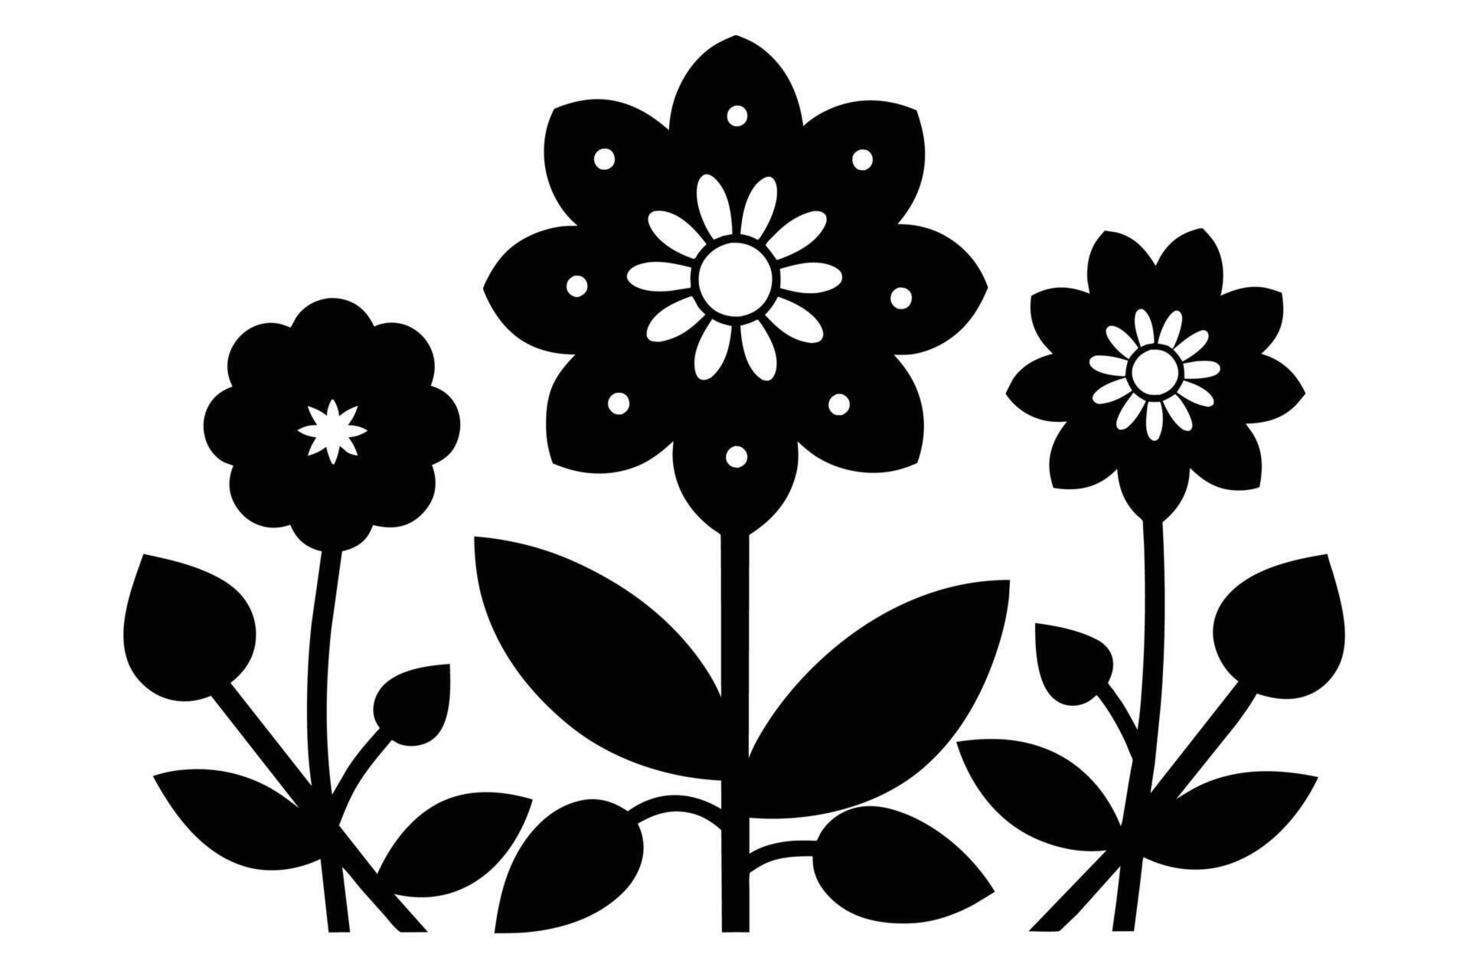 negro separar símbolos de flores vector